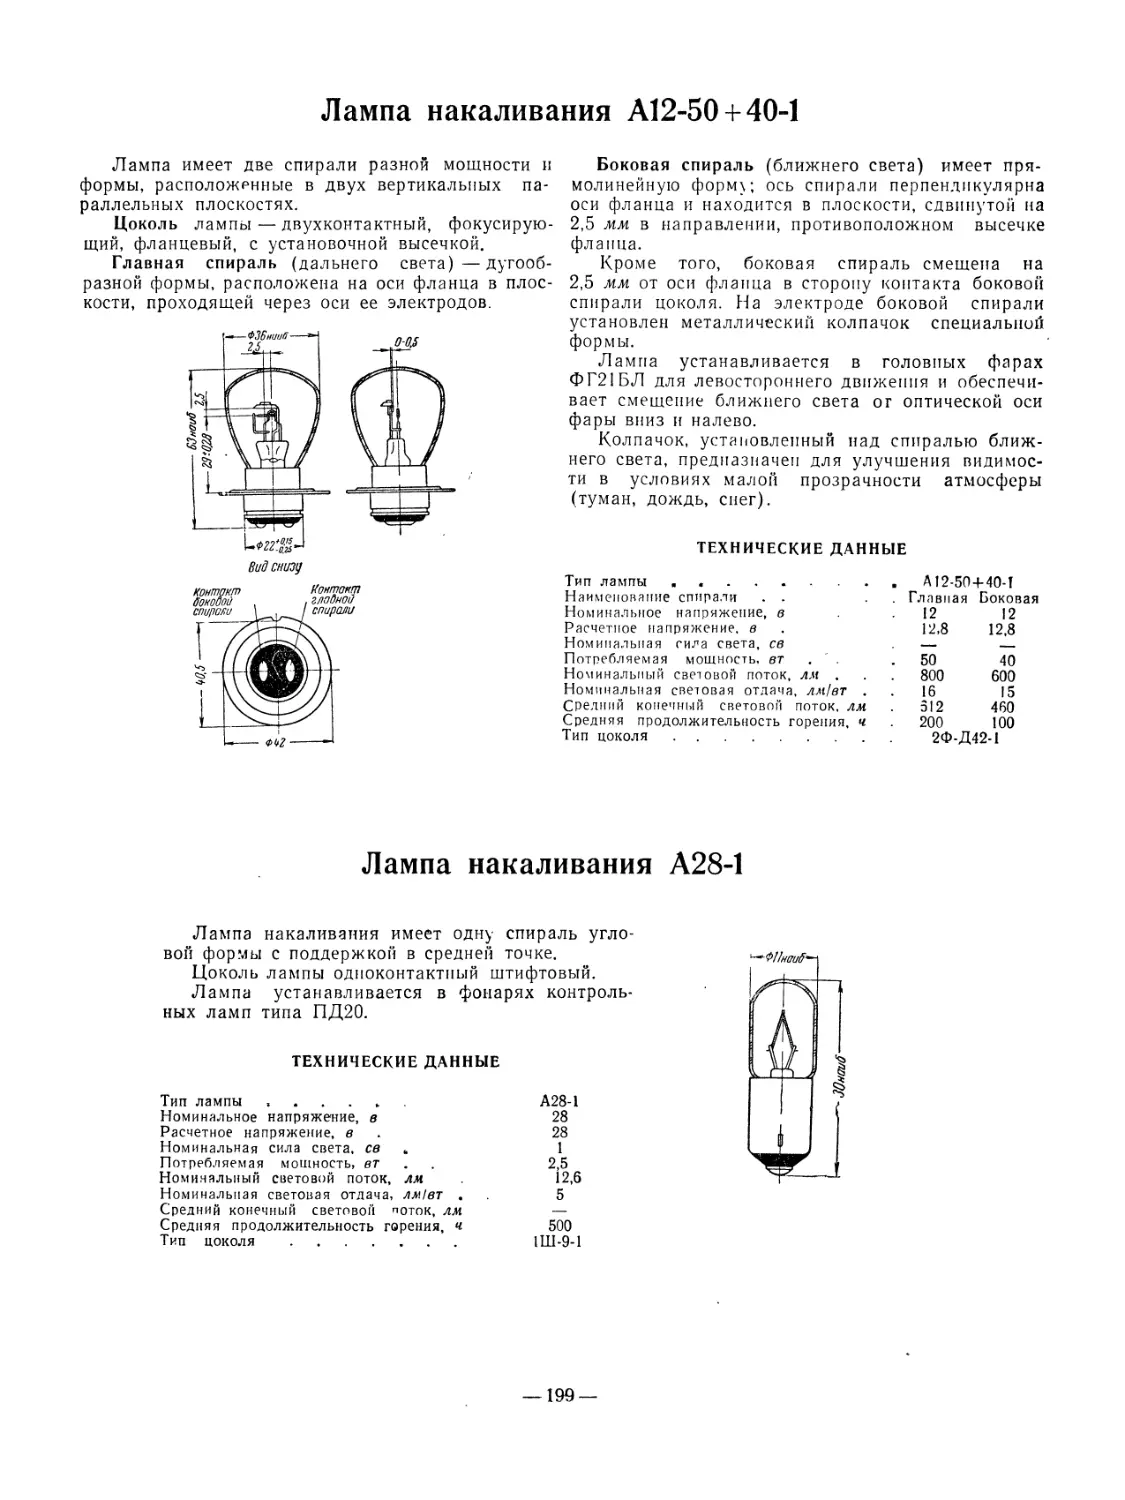 Лампа накаливания Al2-50-f40-l
Лампа накаливания А^8 1